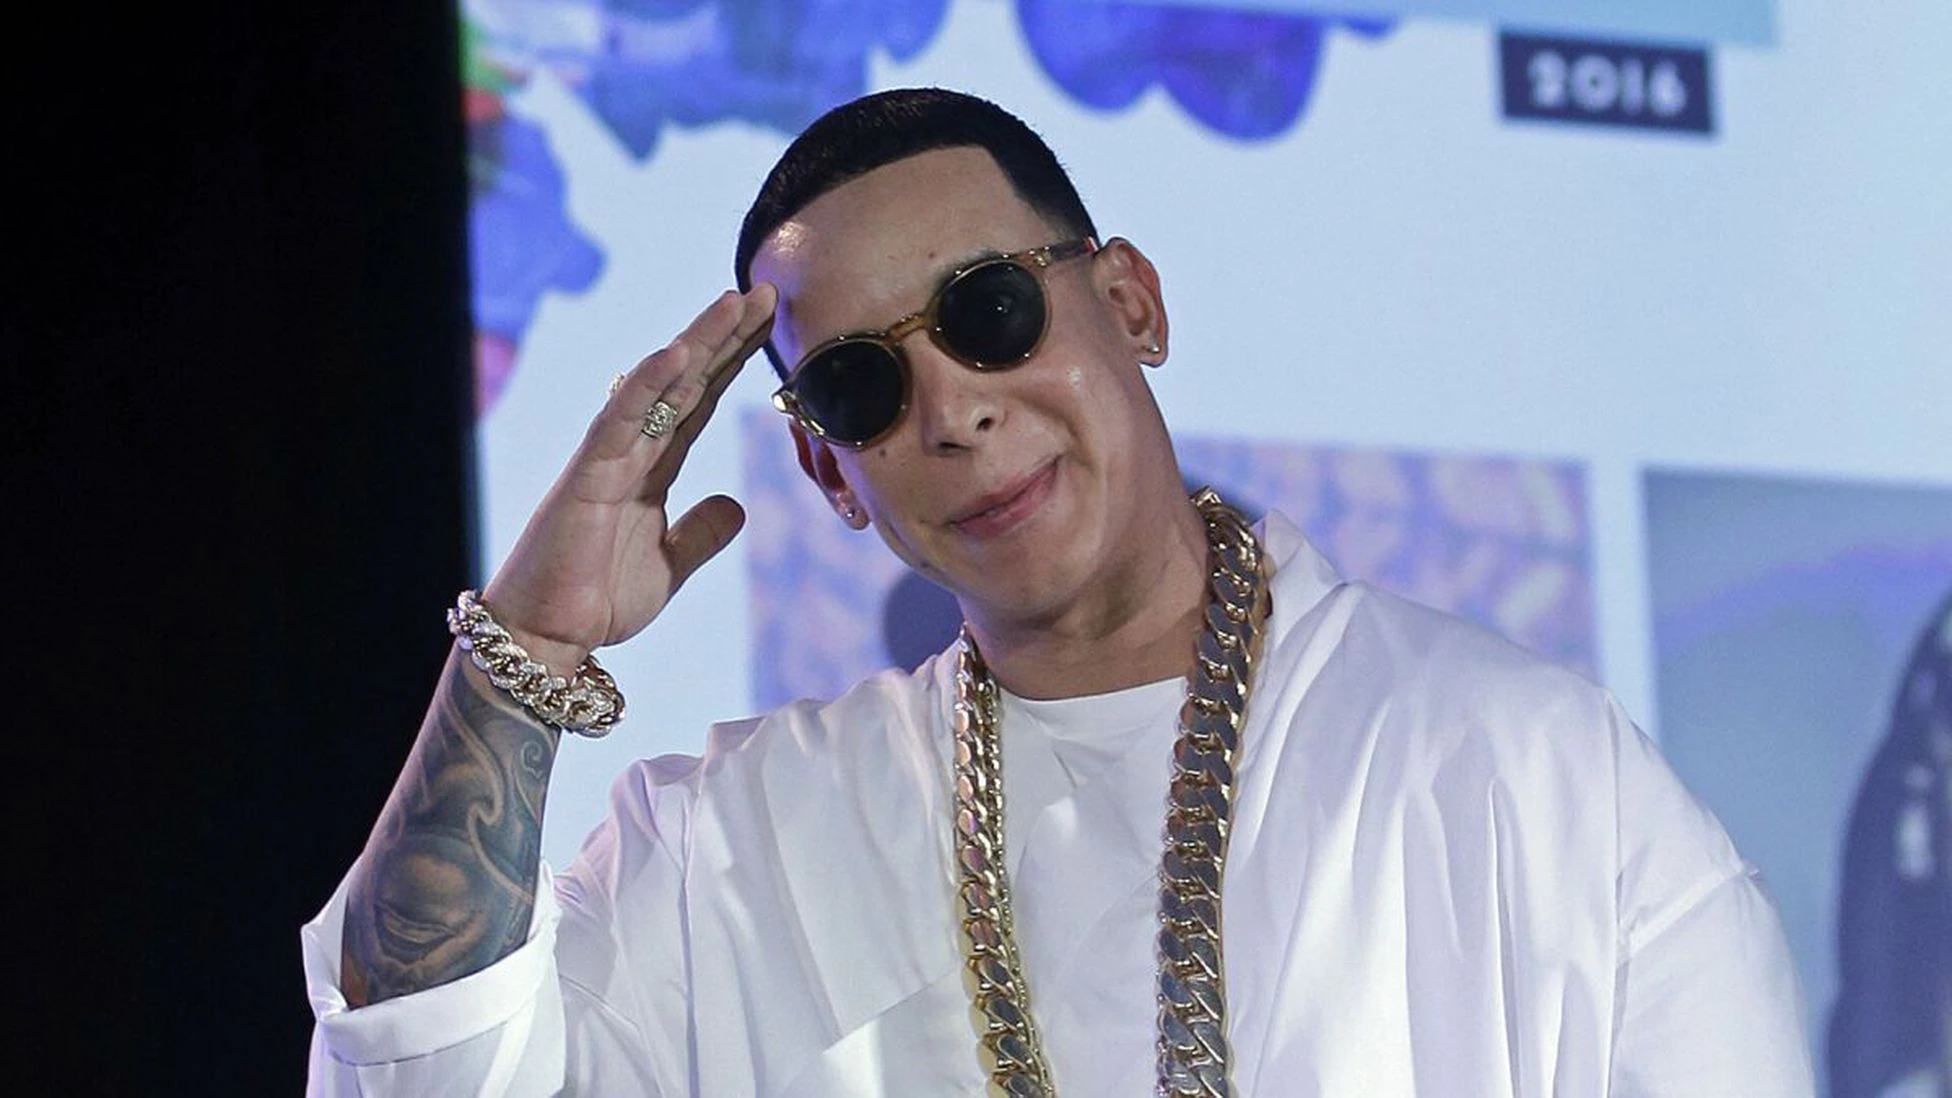 ¿Cuánto cuesta la entrada al concierto de Daddy Yankee 2022 en Perú?